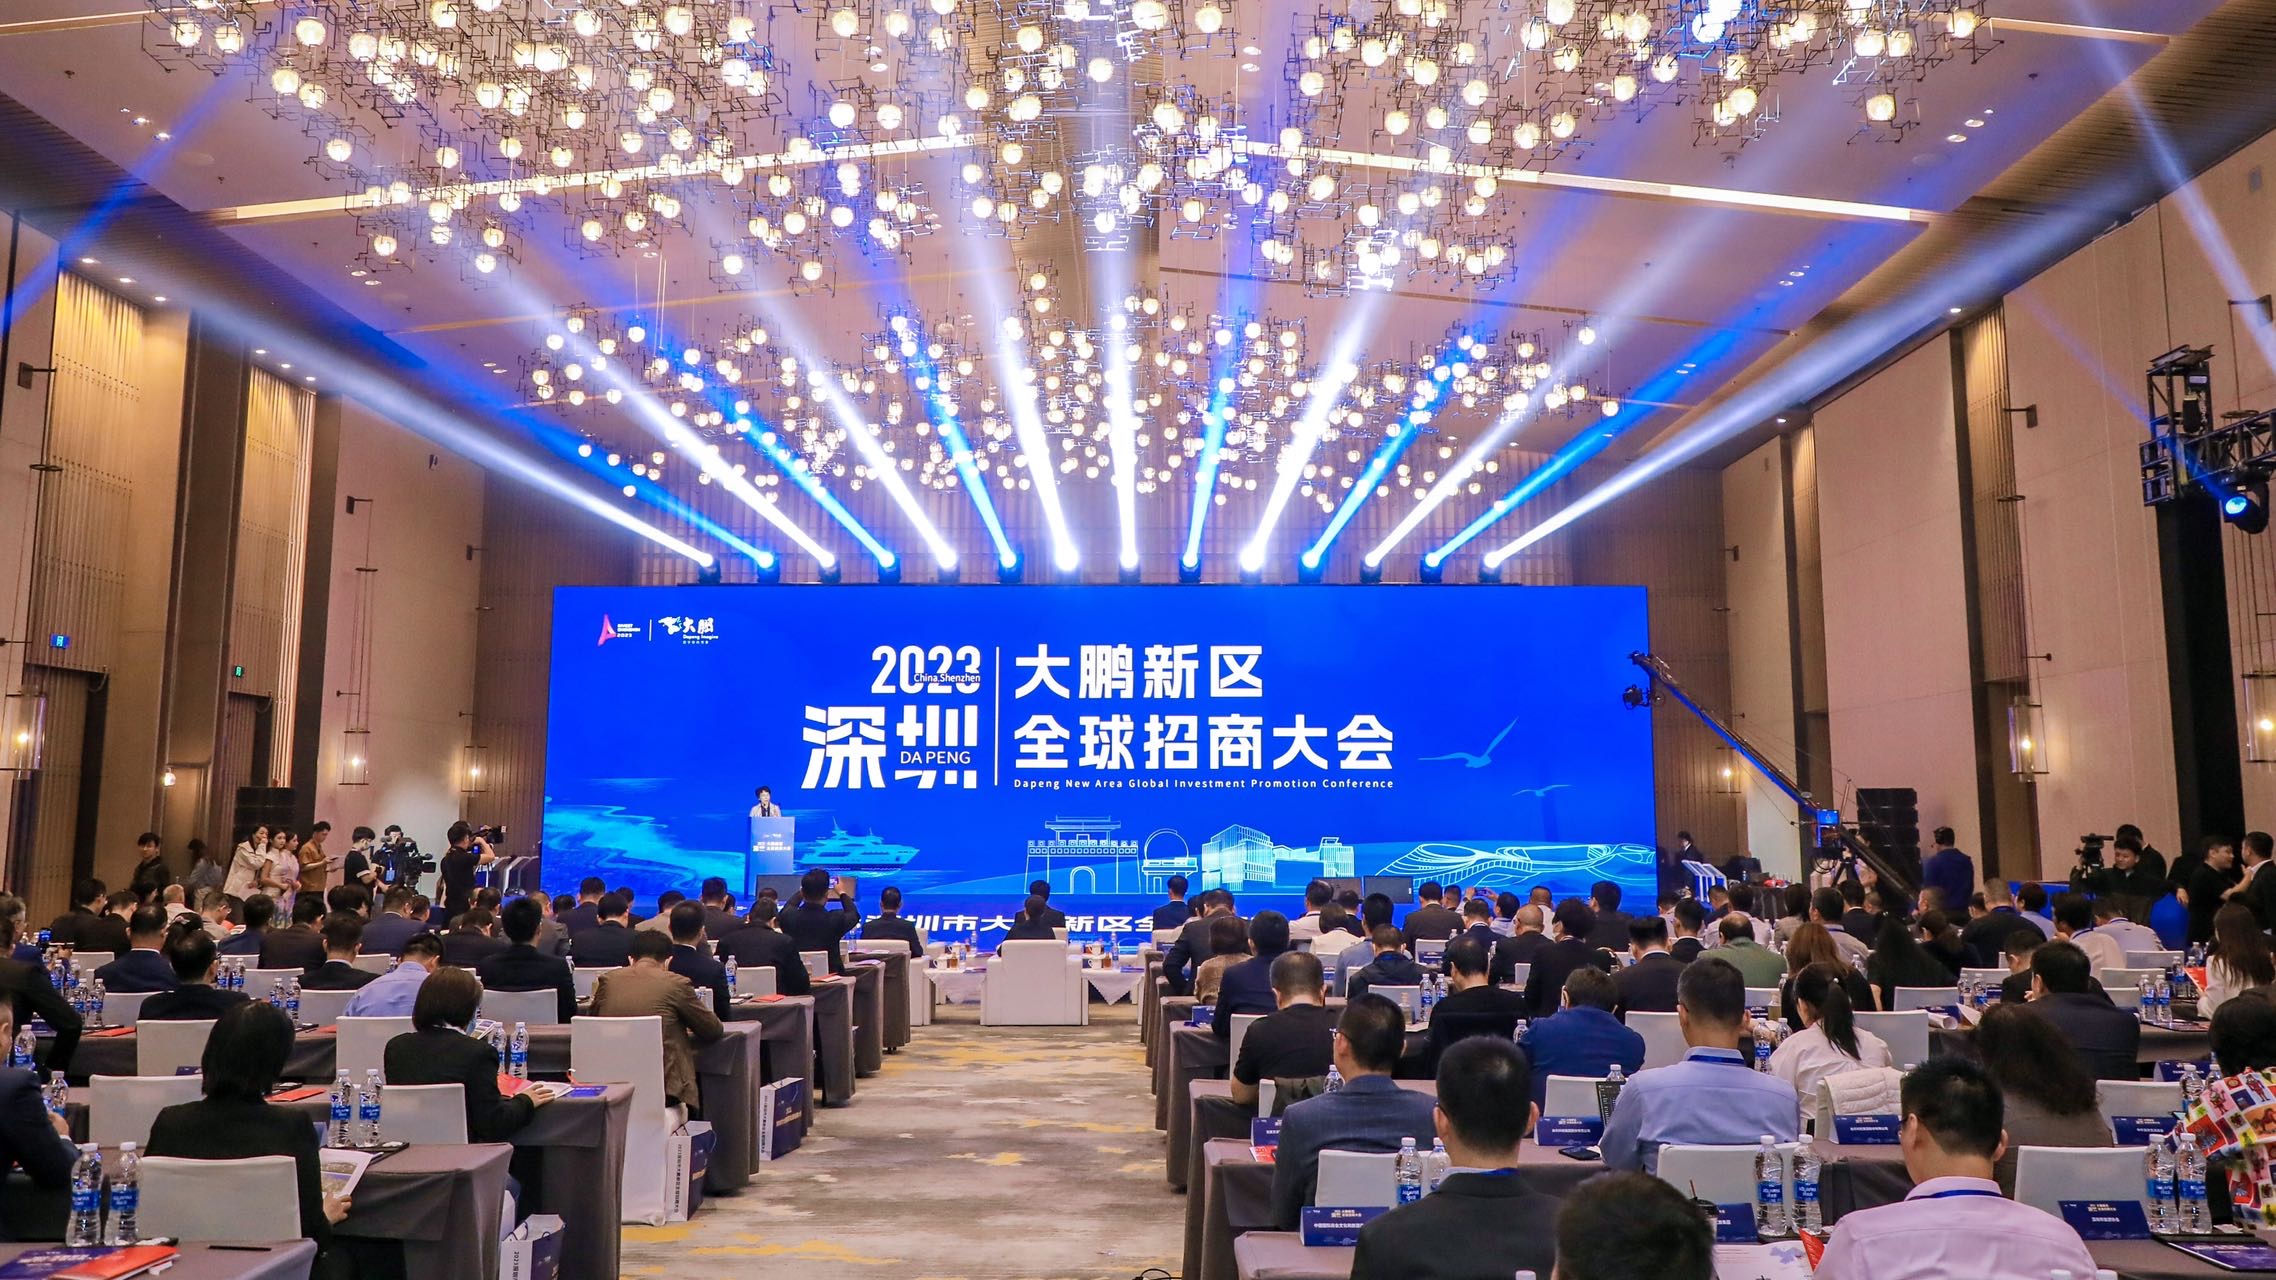 2023深圳大鵬全球招商大會舉行 現場簽約項目34個 投資總額超300億元